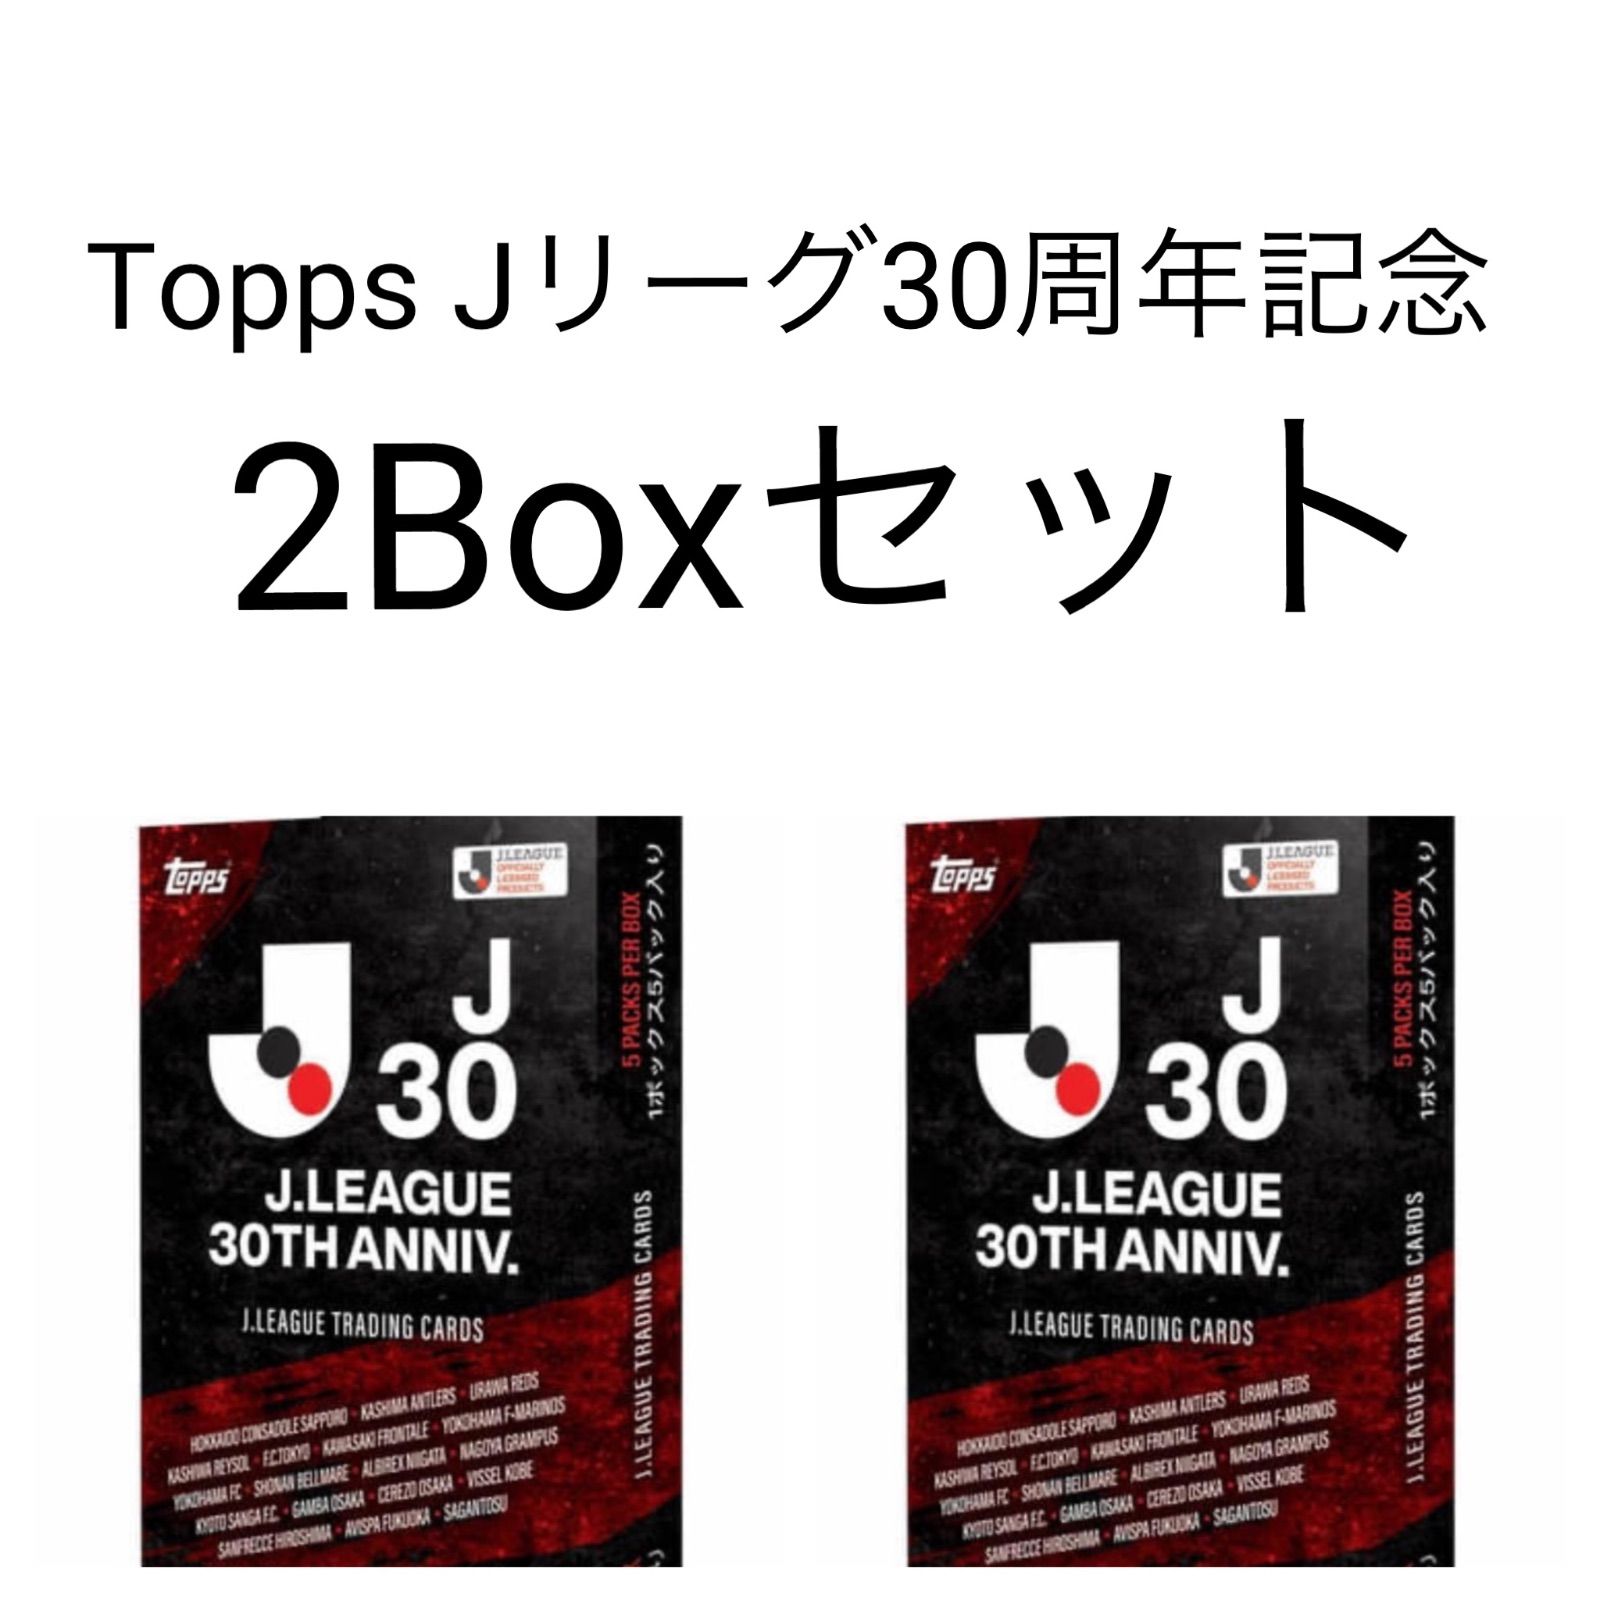 ★新品未開封 数量限定 Topps Jリーグ 30周年記念 特別カード 2BOXそら_トレカ